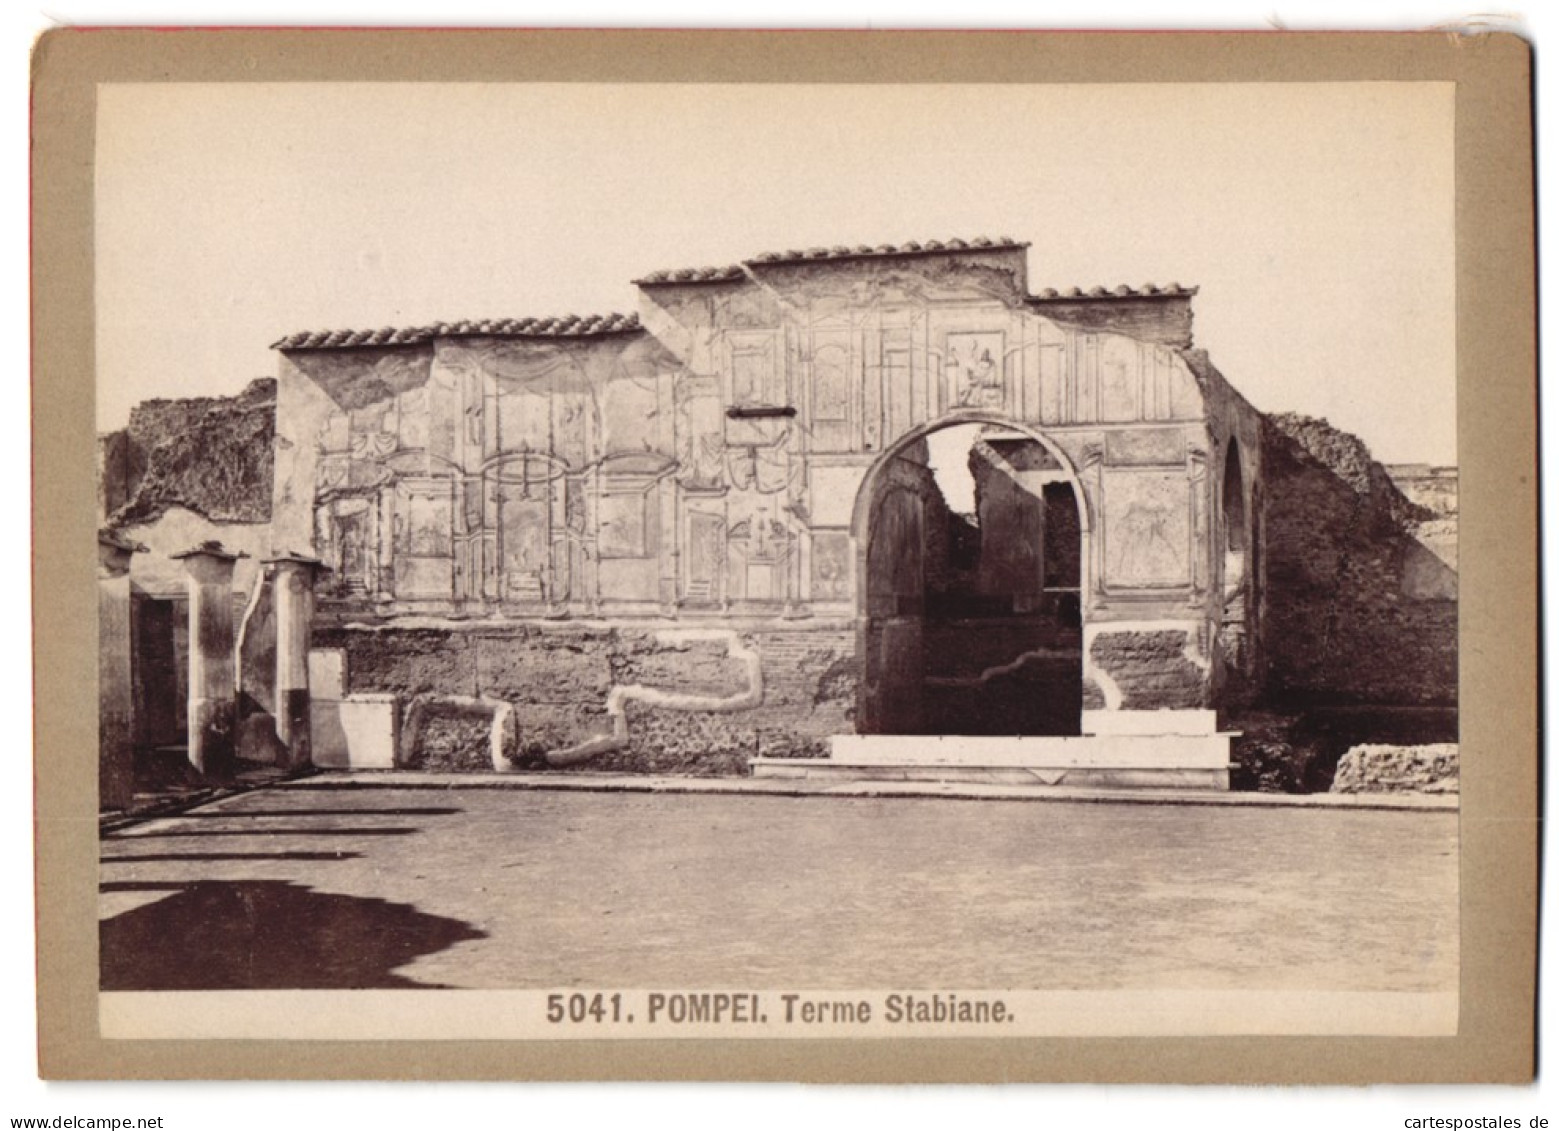 Foto Giacomo Brogi, Florence-Naples, Ansicht Pompei - Pompeji, Terme Stabiane  - Lugares